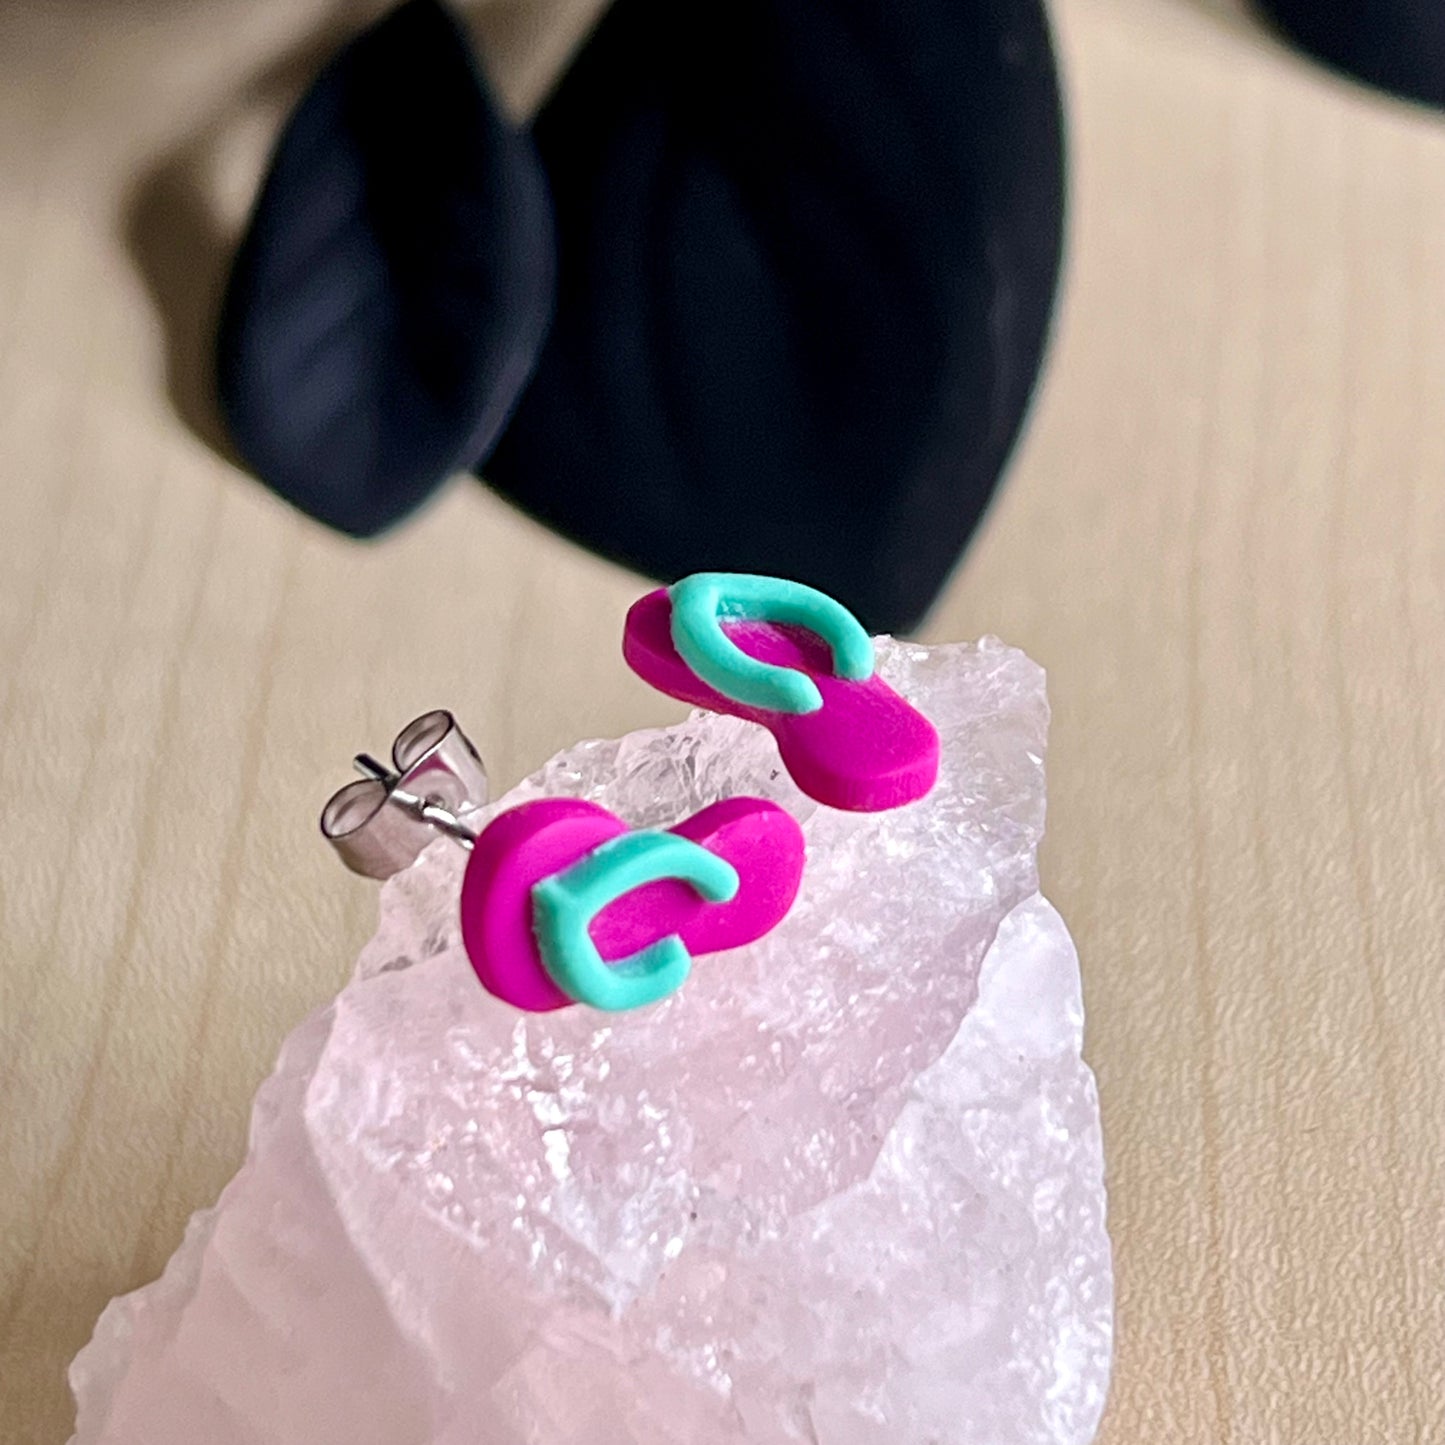 Thongs / flip flops studs, dark pink with Fiji blue, handmade earrings